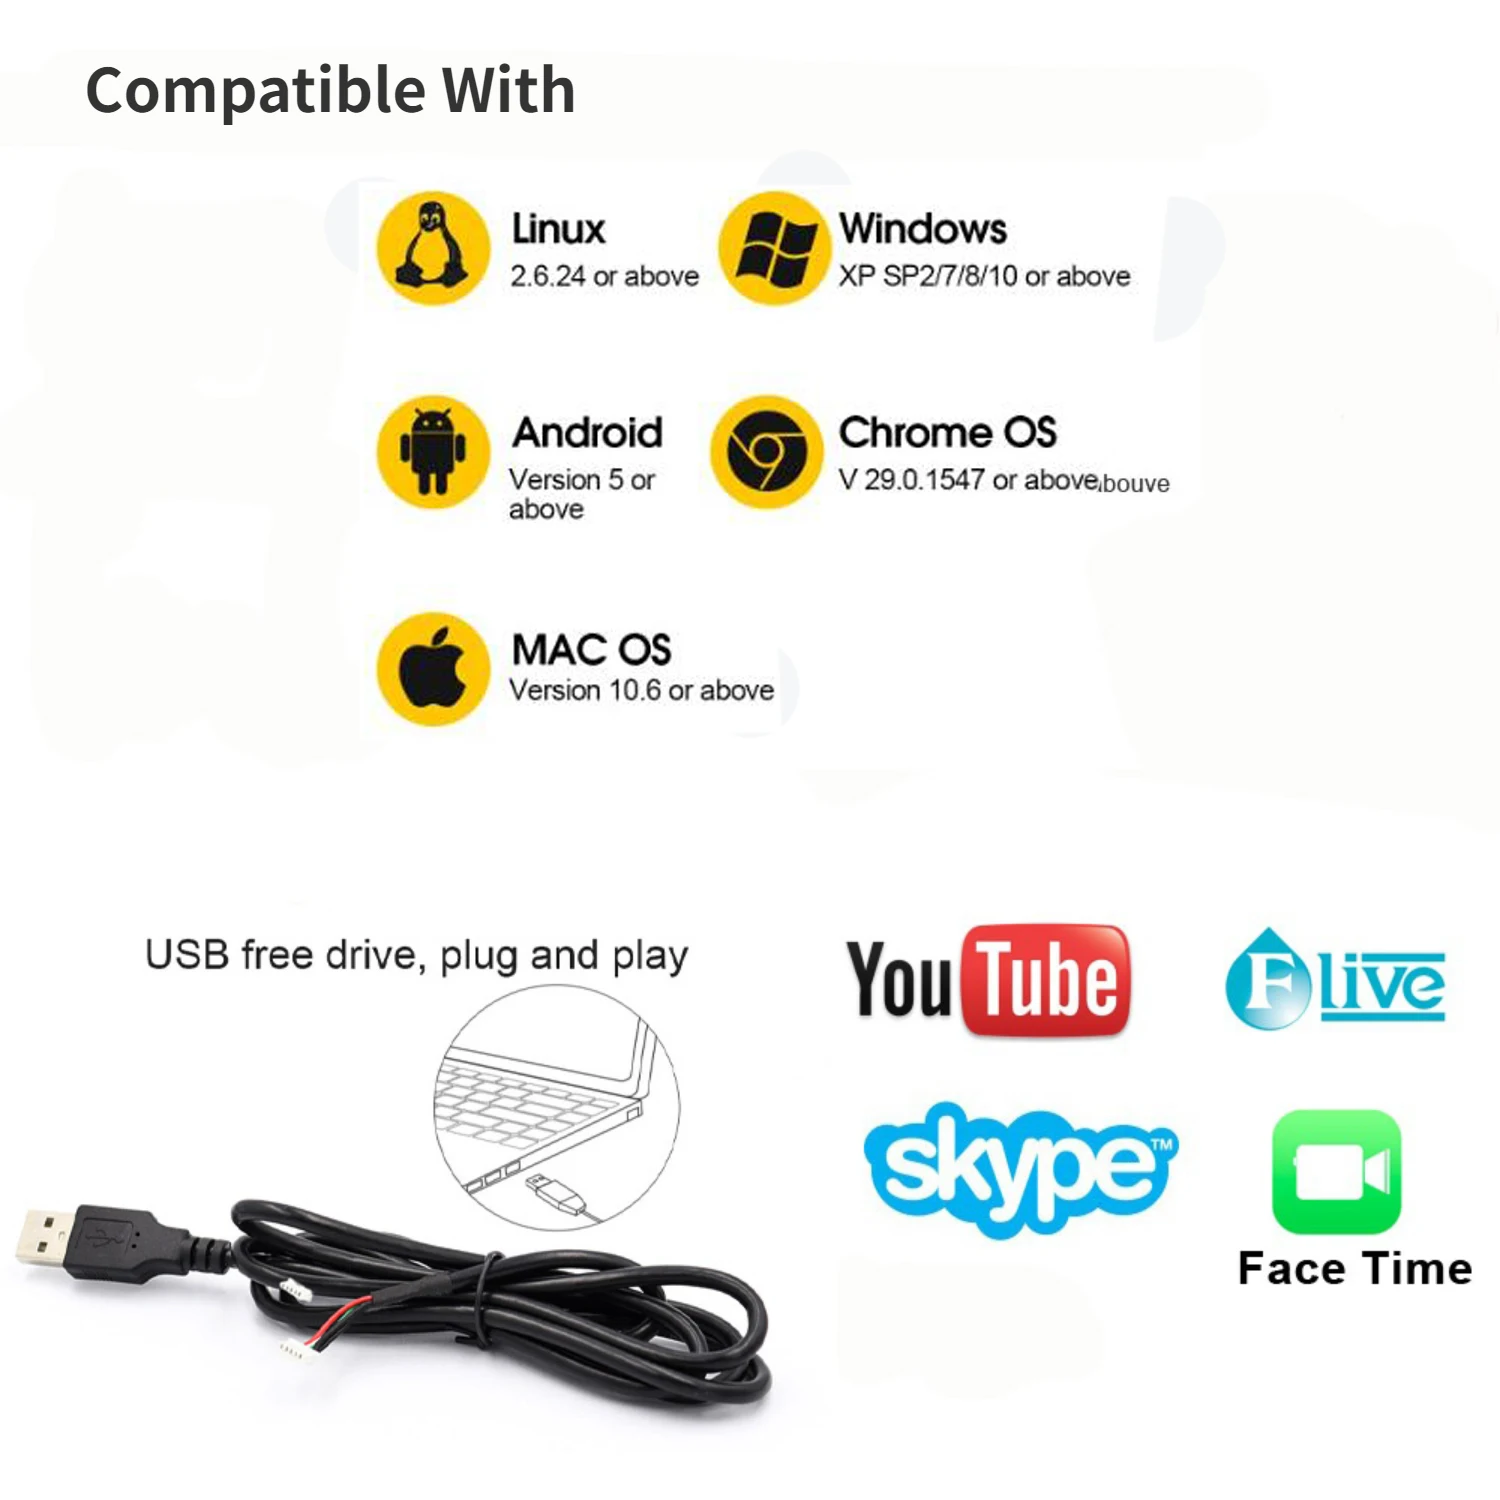  1080P USB камера 60fps с 5-50mm 2.8-12mm варифокален CS обектив, 1920x1080 HD уеб камера, SC200AI, UVC съвместим Plug And Play